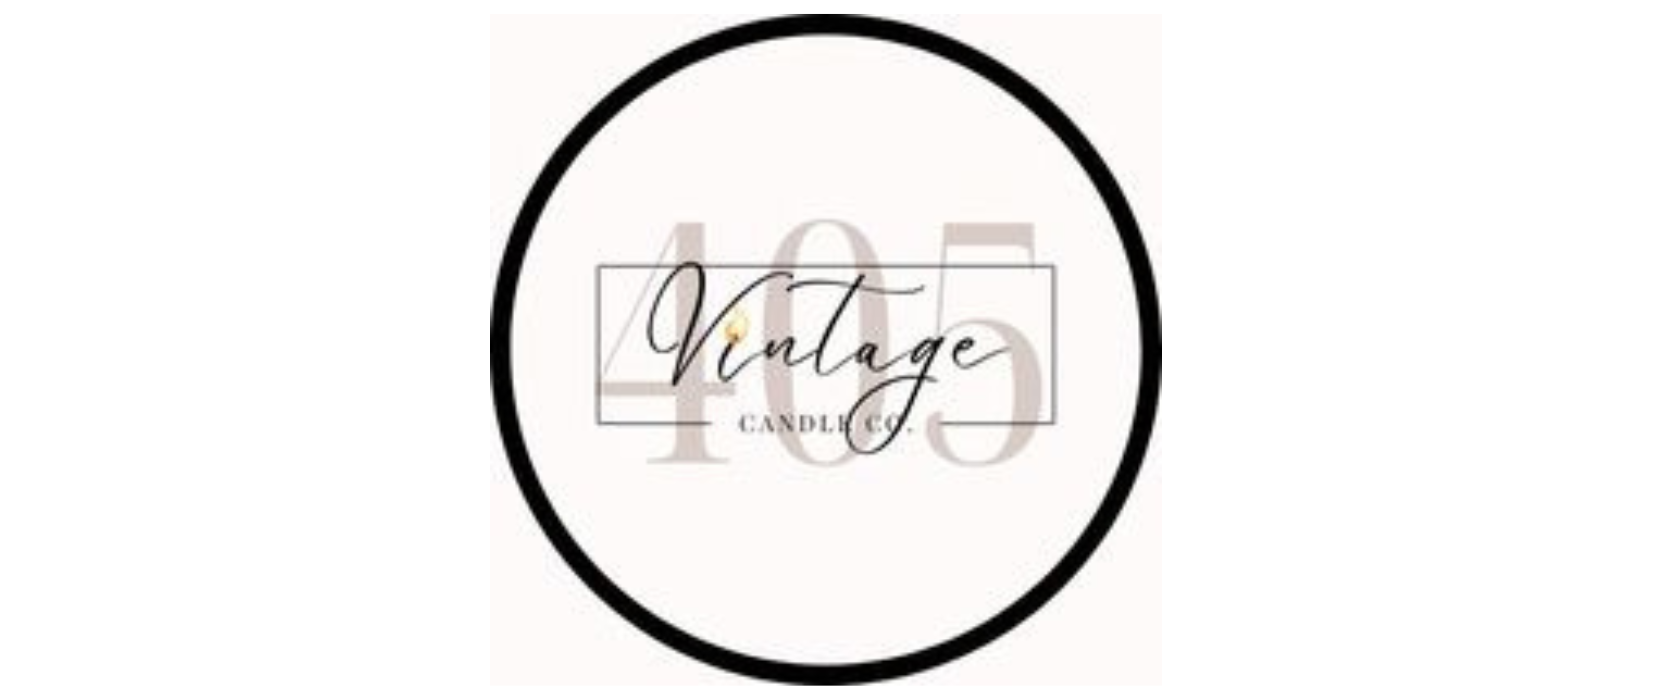 Vintage 405 Candle Co circle logo on white background